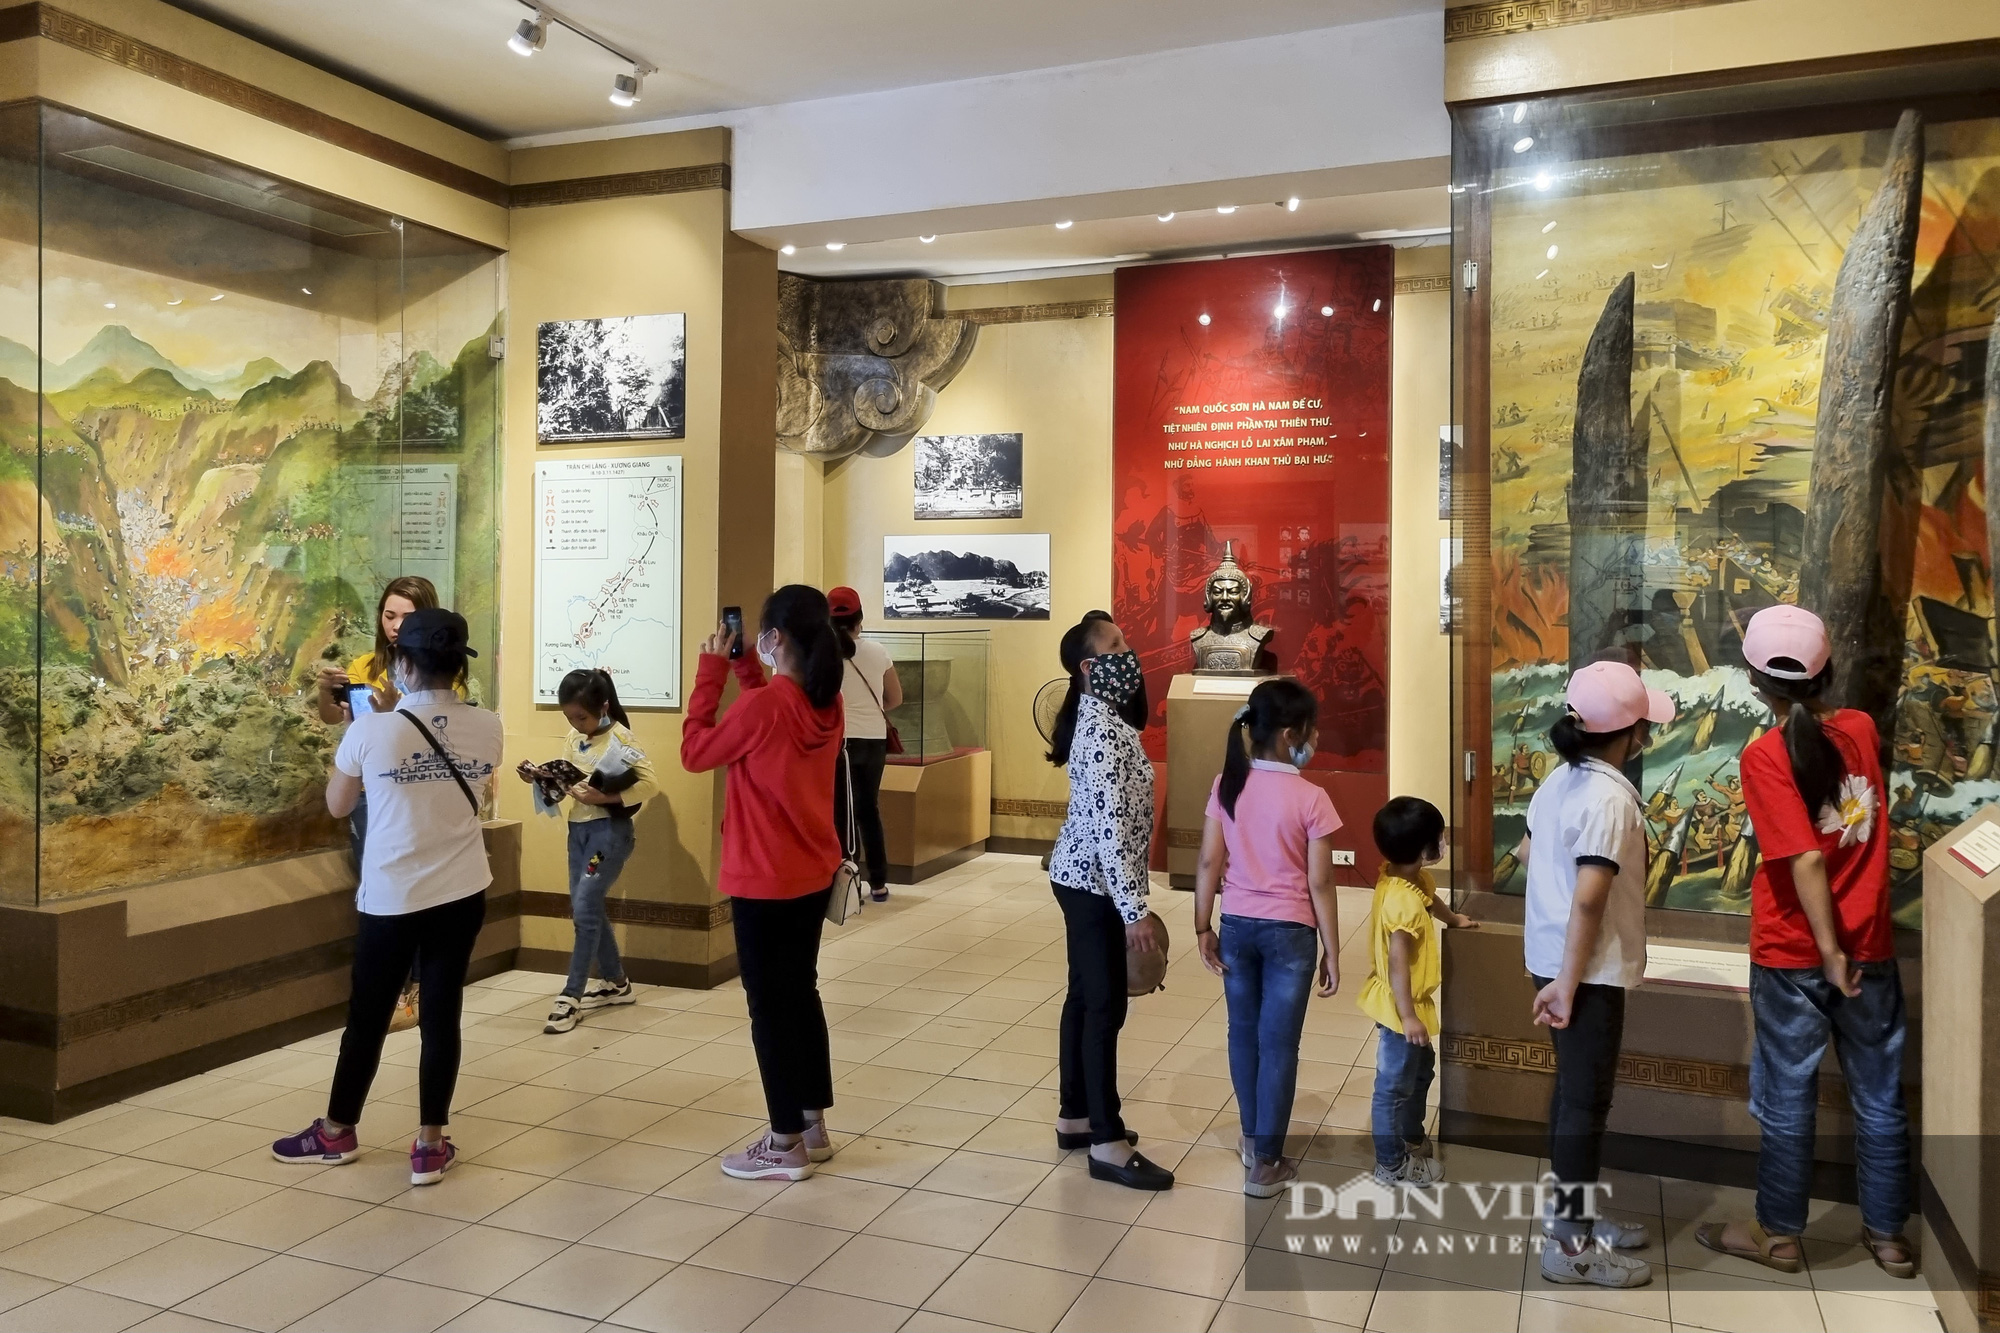 Bất ngờ lượng du khách tham quan lăng Bác, bảo tàng tại Hà Nội trong sáng 30/4 - Ảnh 8.